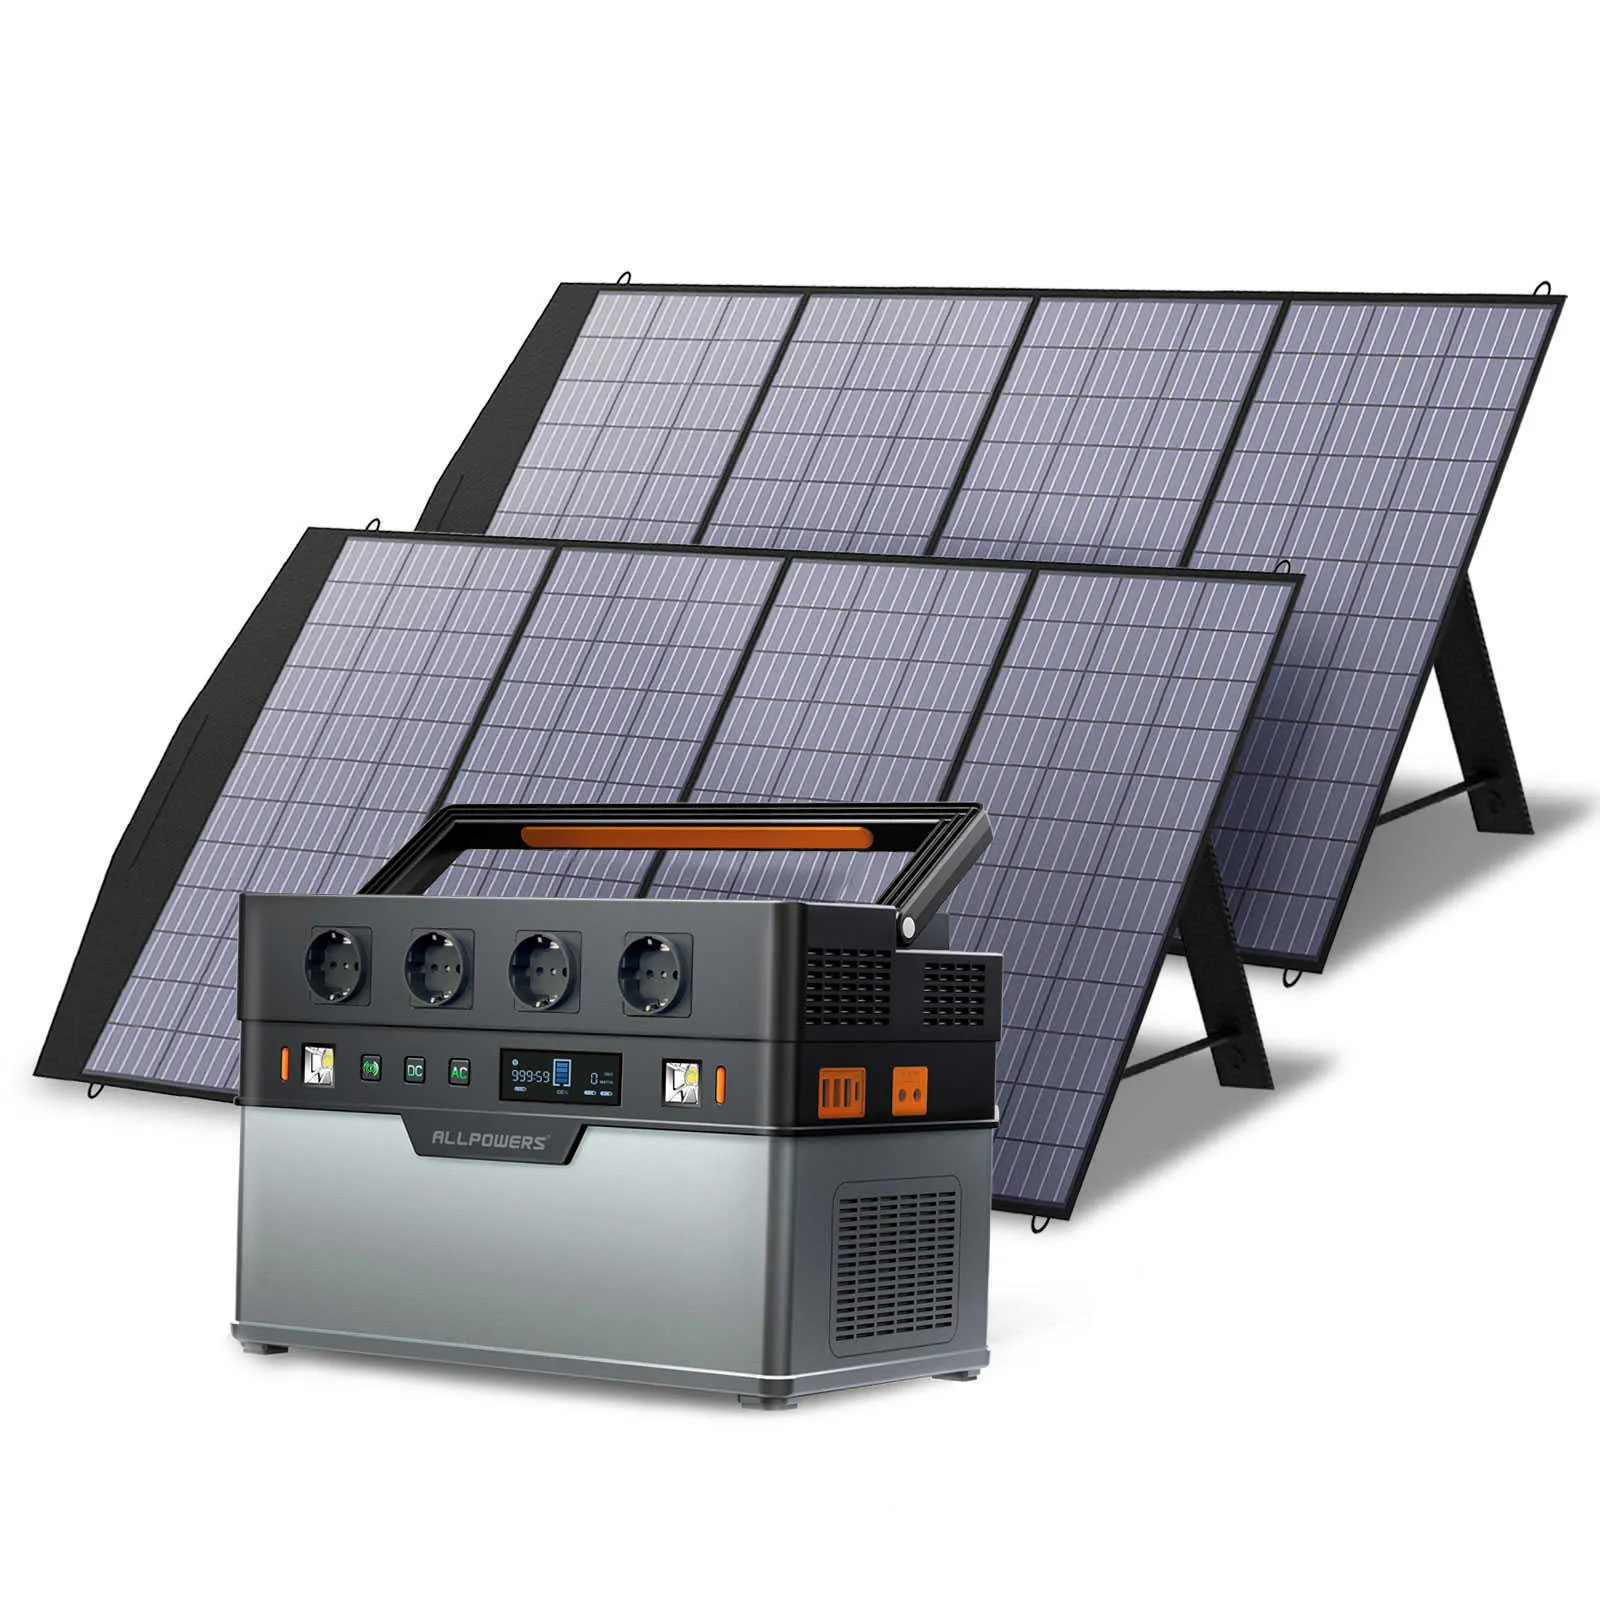 ALLPOWERS Portable Power Station S1500 1092Wh Générateur solaire extérieur 1500W Batterie au lithium mobile avec panneau solaire 18V